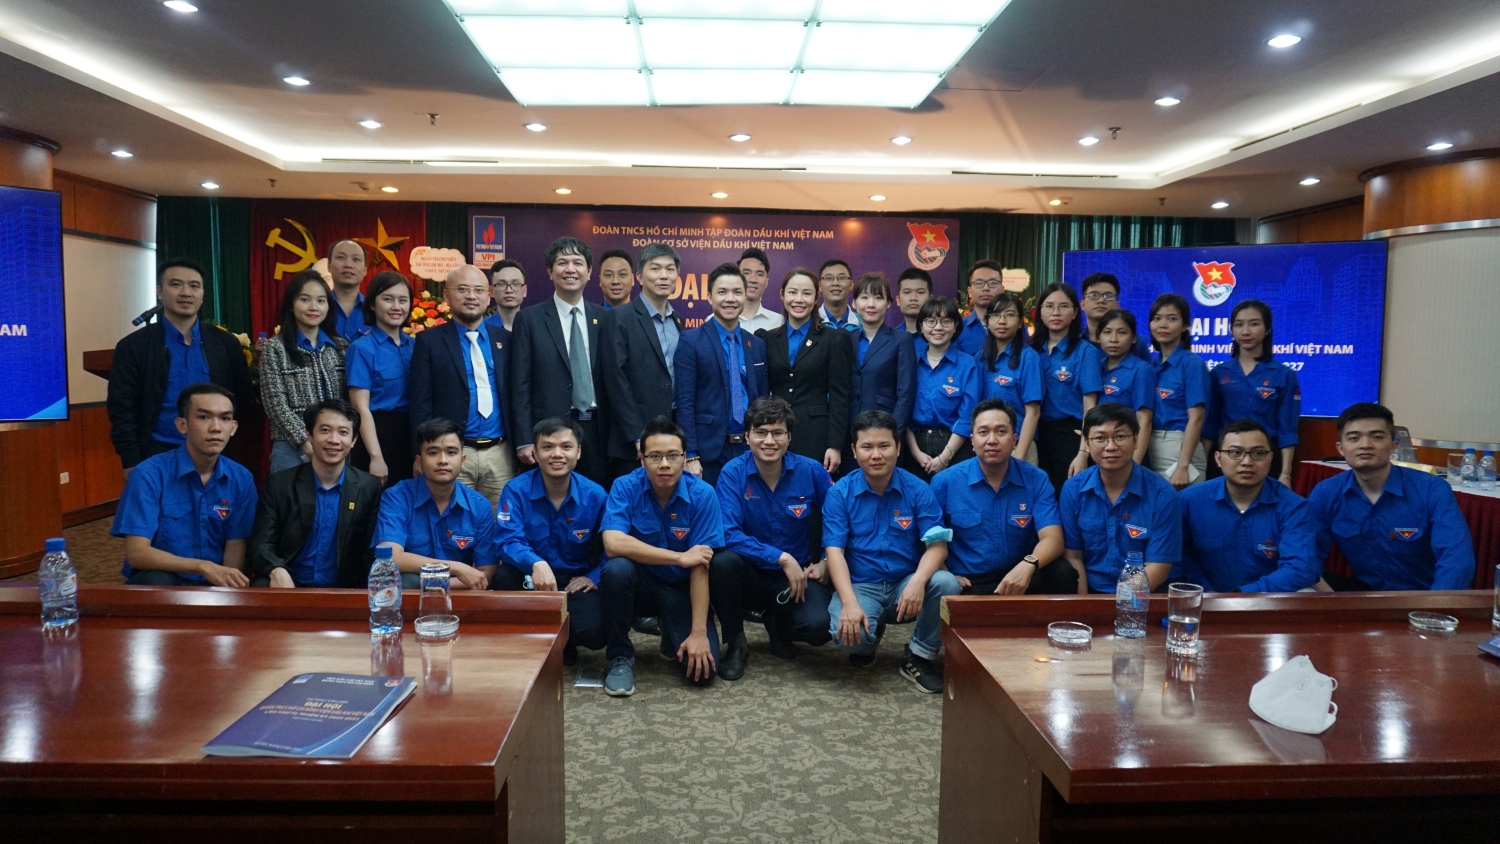 Tuổi trẻ Viện Dầu khí Việt Nam - Đoàn kết, Đổi mới sáng tạo, Hiệu quả